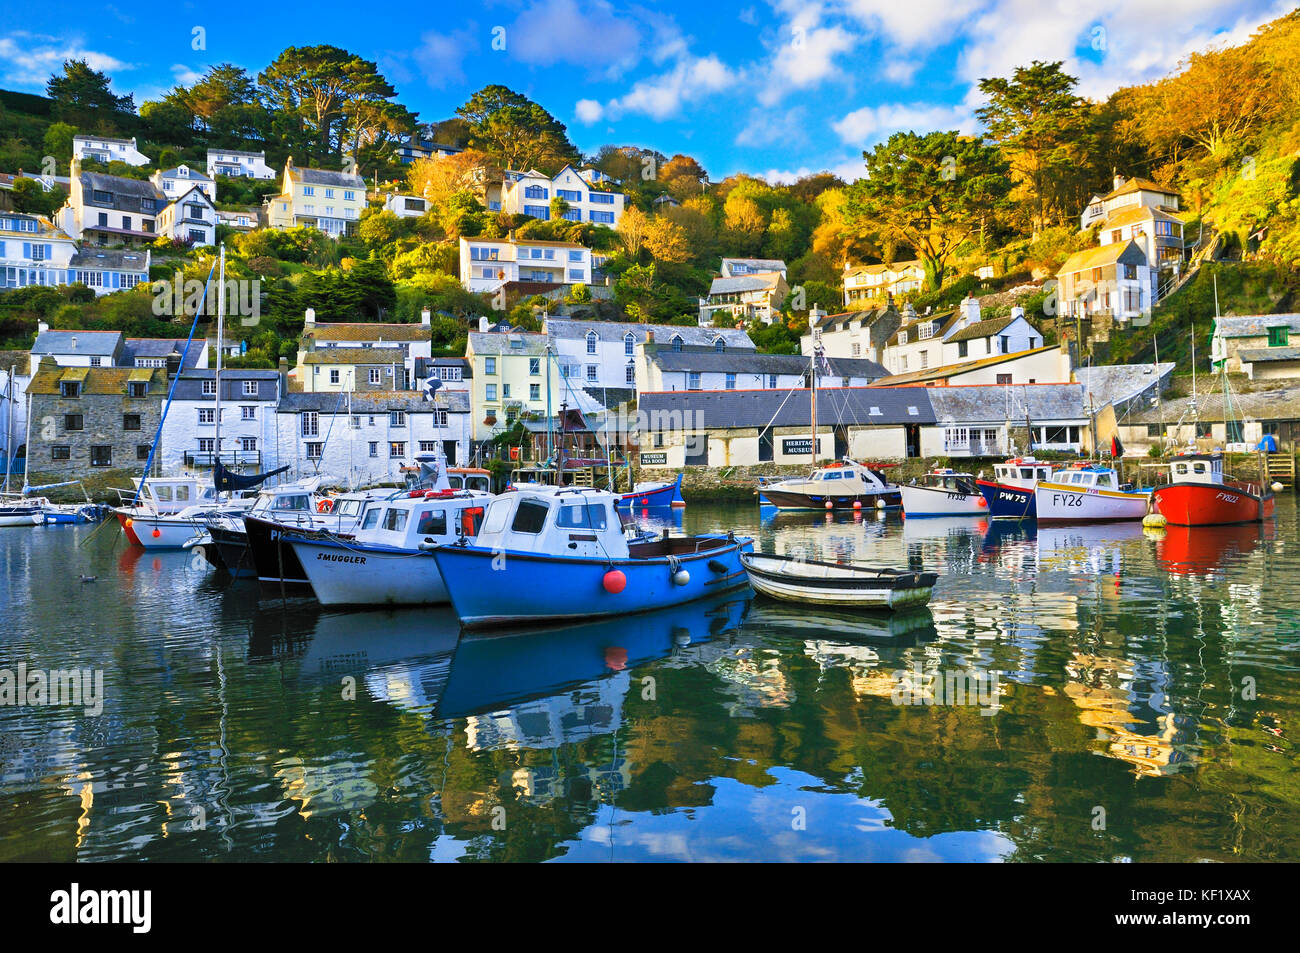 Polperro, Cornwall, Regno Unito. Pittoresca Scena raffigurante il porto interno con le sue colorate barche da pesca e le tradizionali cottage in pietra. Foto Stock